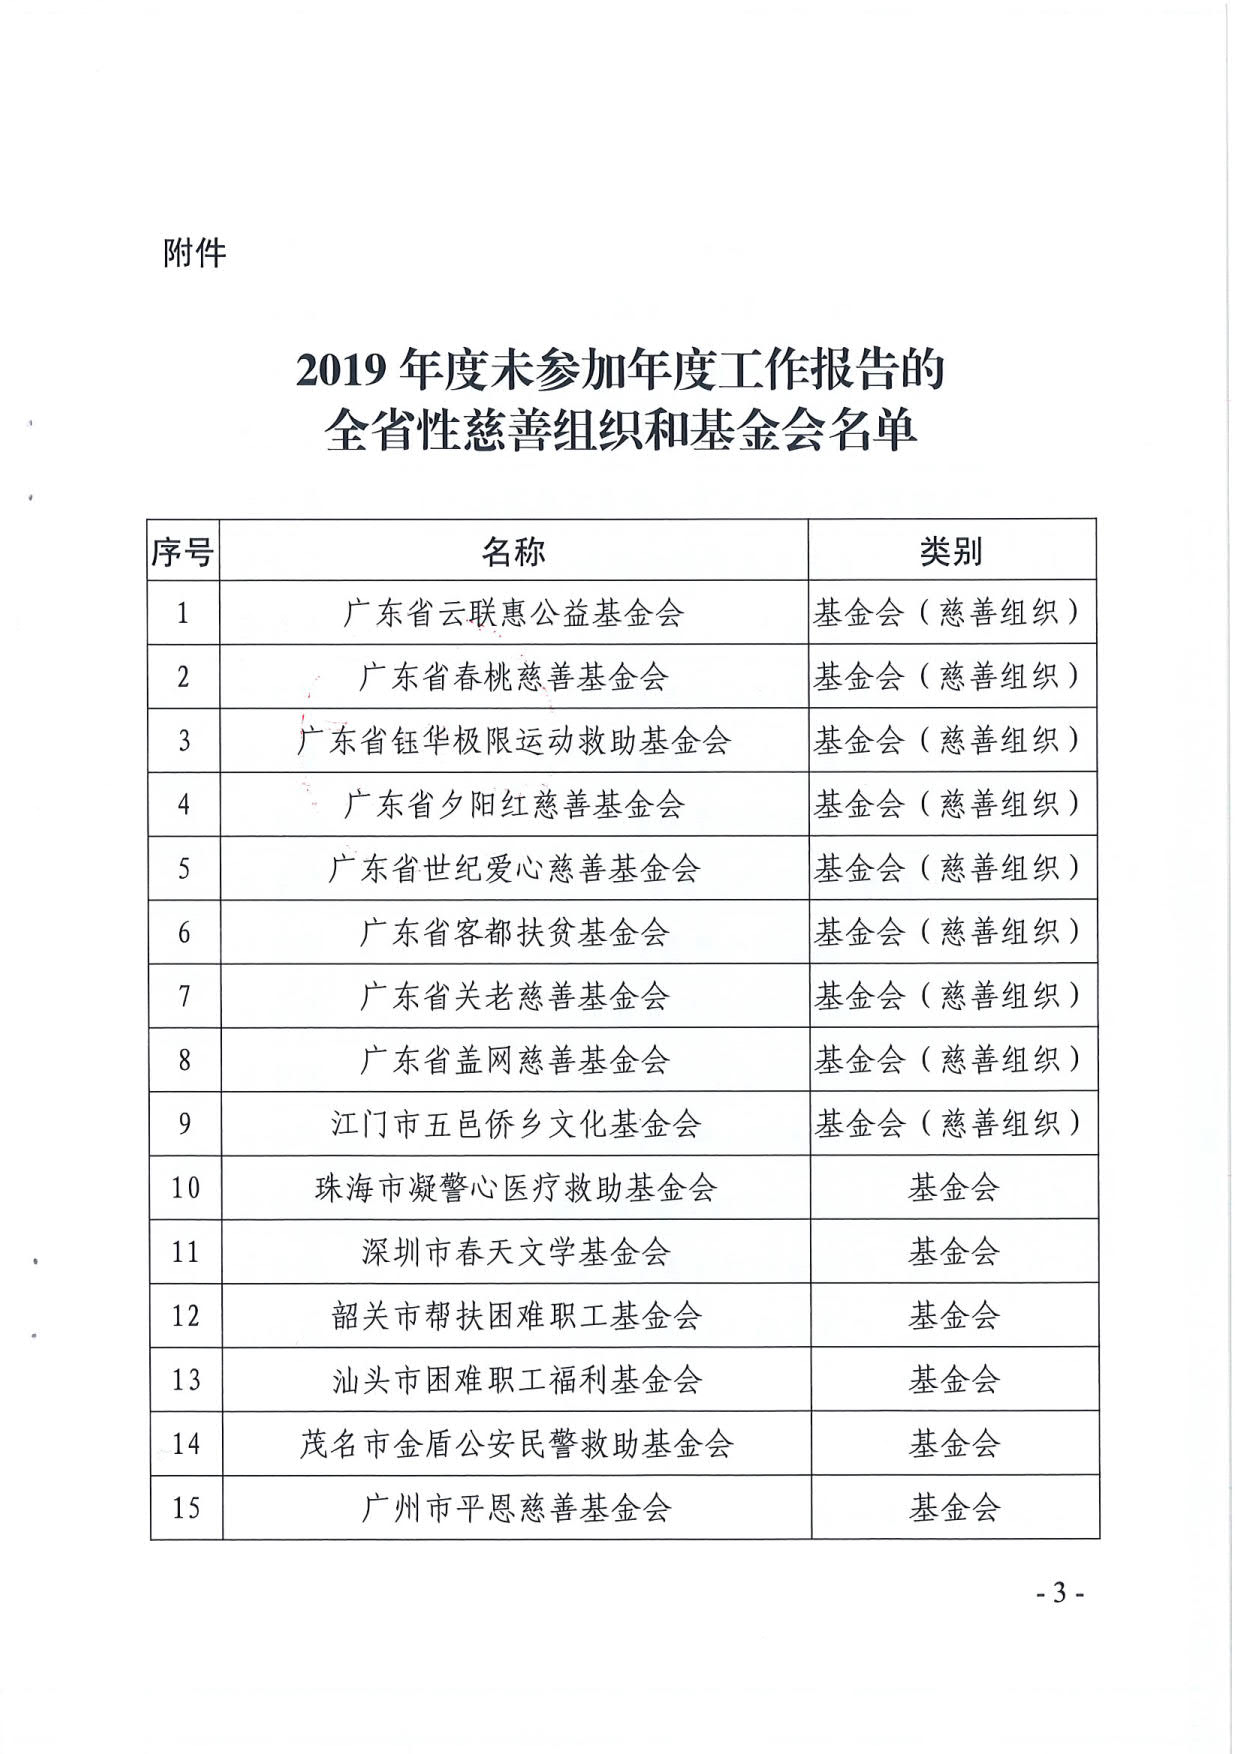 广东省民政厅关于全省性慈善组织和基金会2019年度工作报告情况的通报_3.jpg